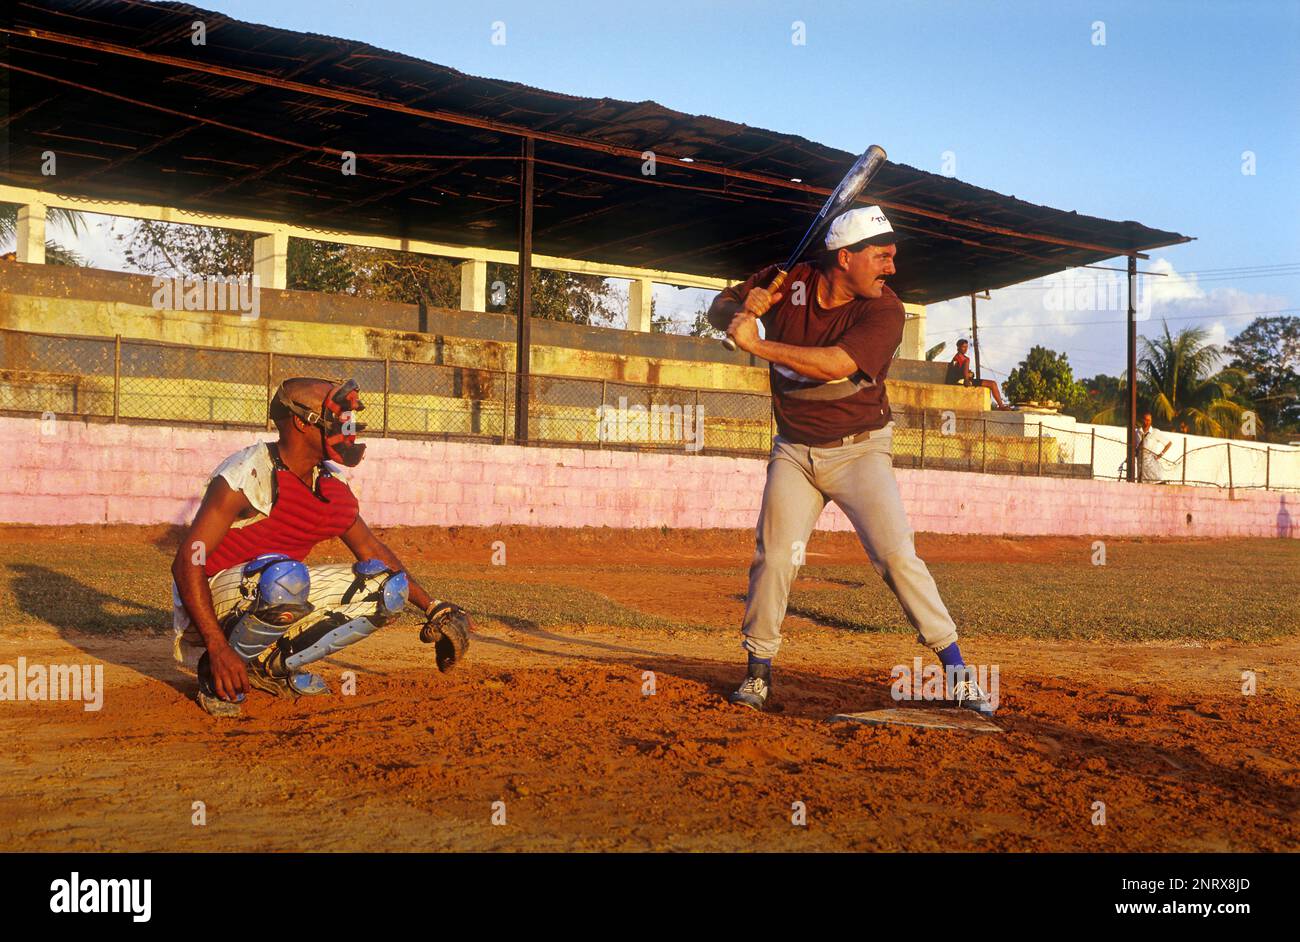 playing baseball, Vinales, Pinar del Rio province, Cuba. Stock Photo